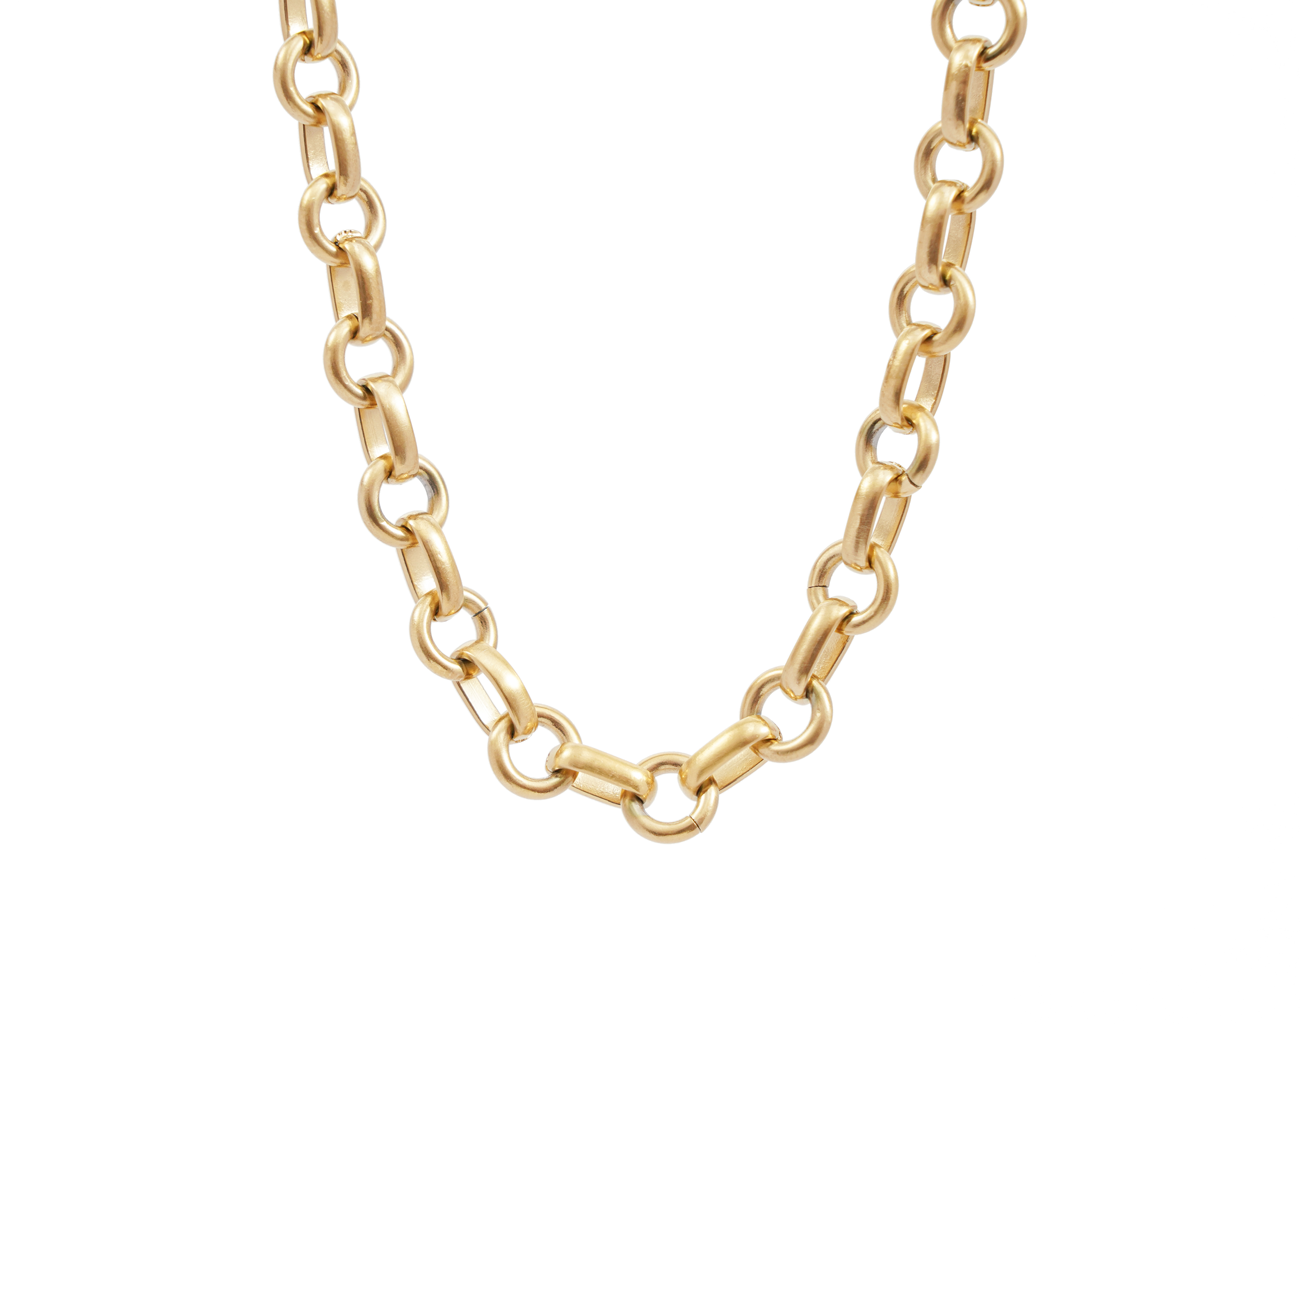 Milla chain necklace